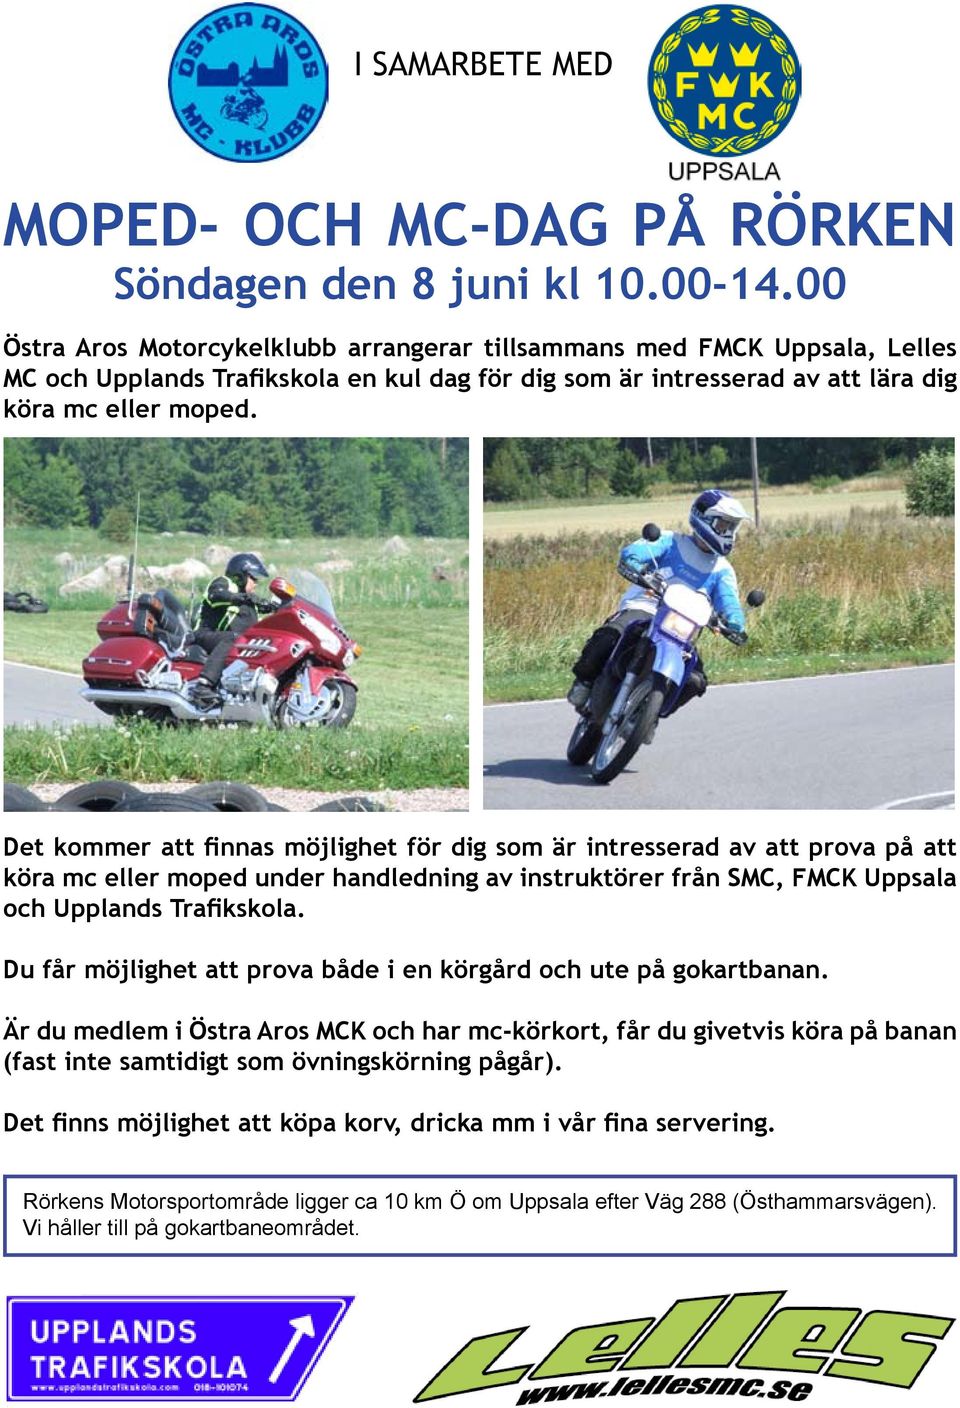 Det kommer att finnas möjlighet för dig som är intresserad av att prova på att köra mc eller moped under handledning av instruktörer från SMC, FMCK Uppsala och Upplands Trafikskola.